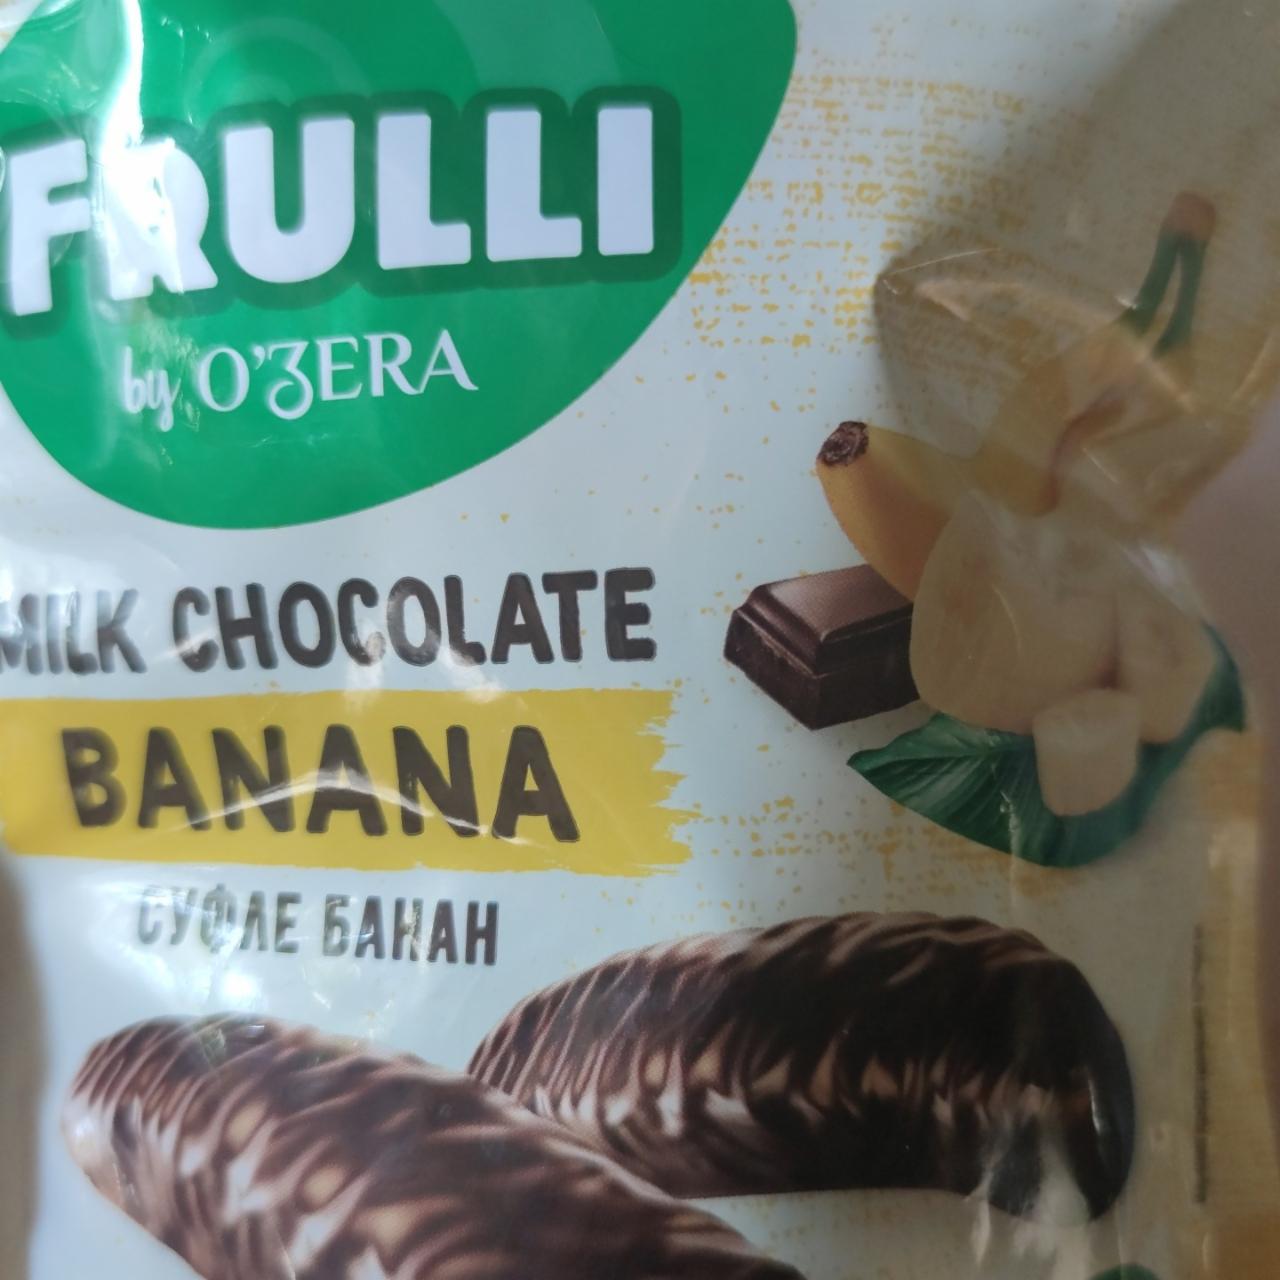 Фото - суфле банан в молочном шоколаде Frulli O'zera